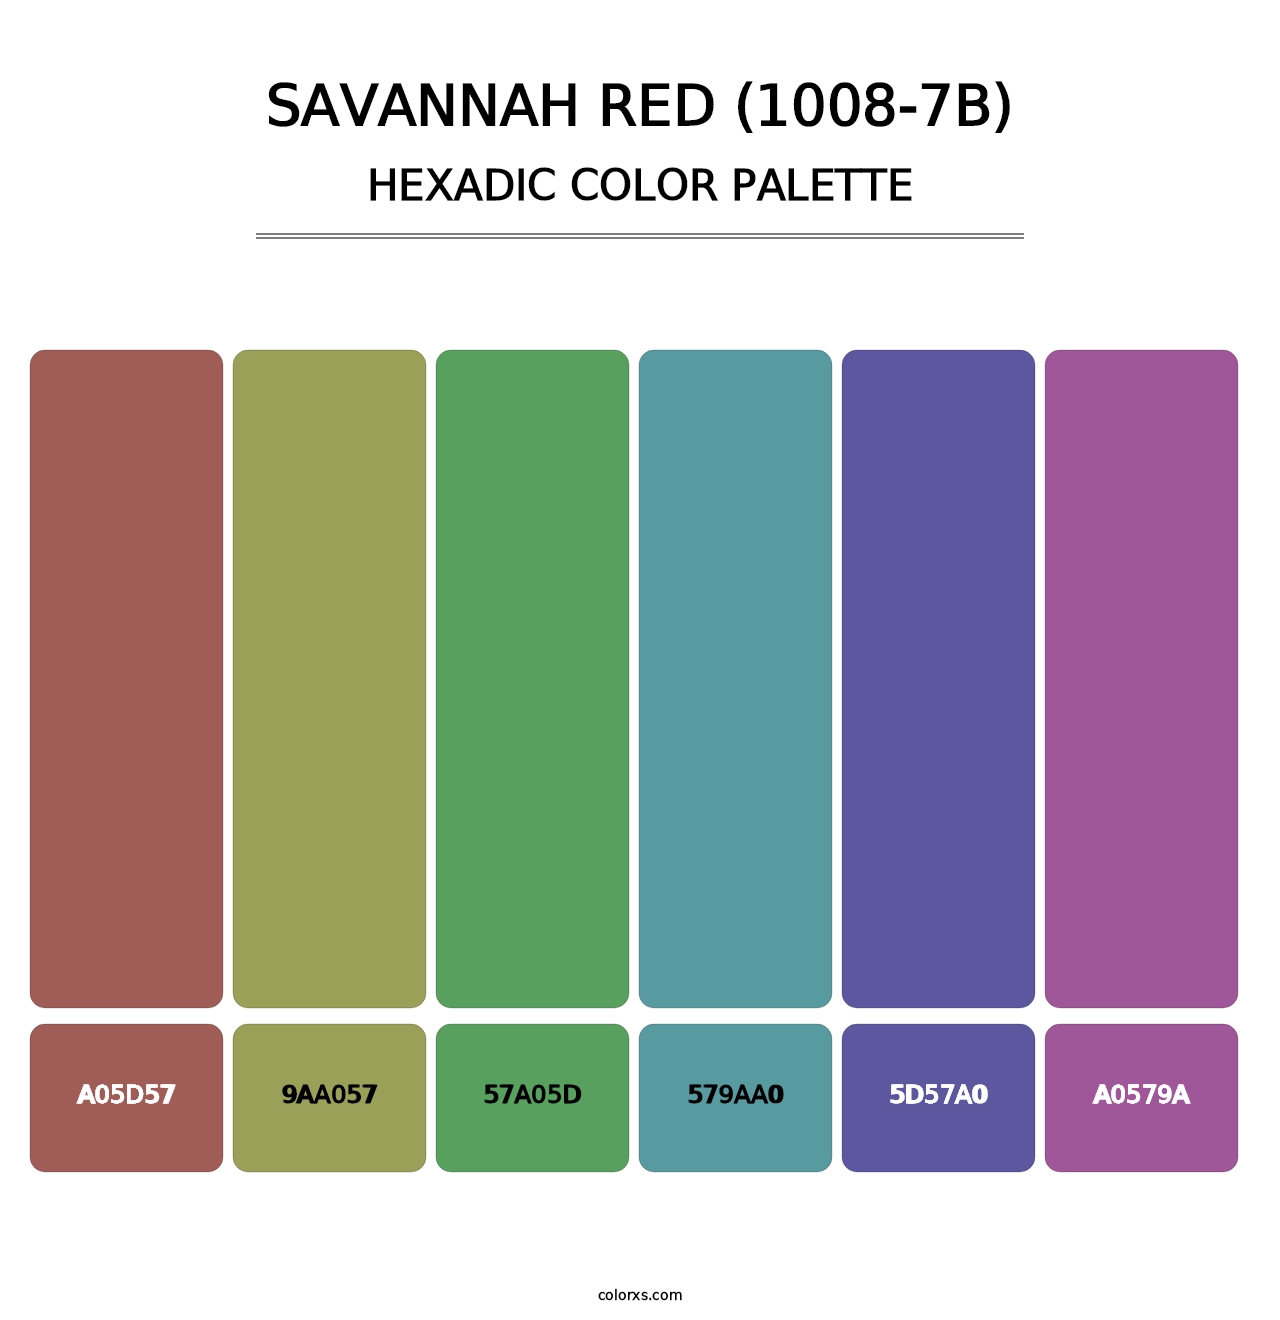 Savannah Red (1008-7B) - Hexadic Color Palette